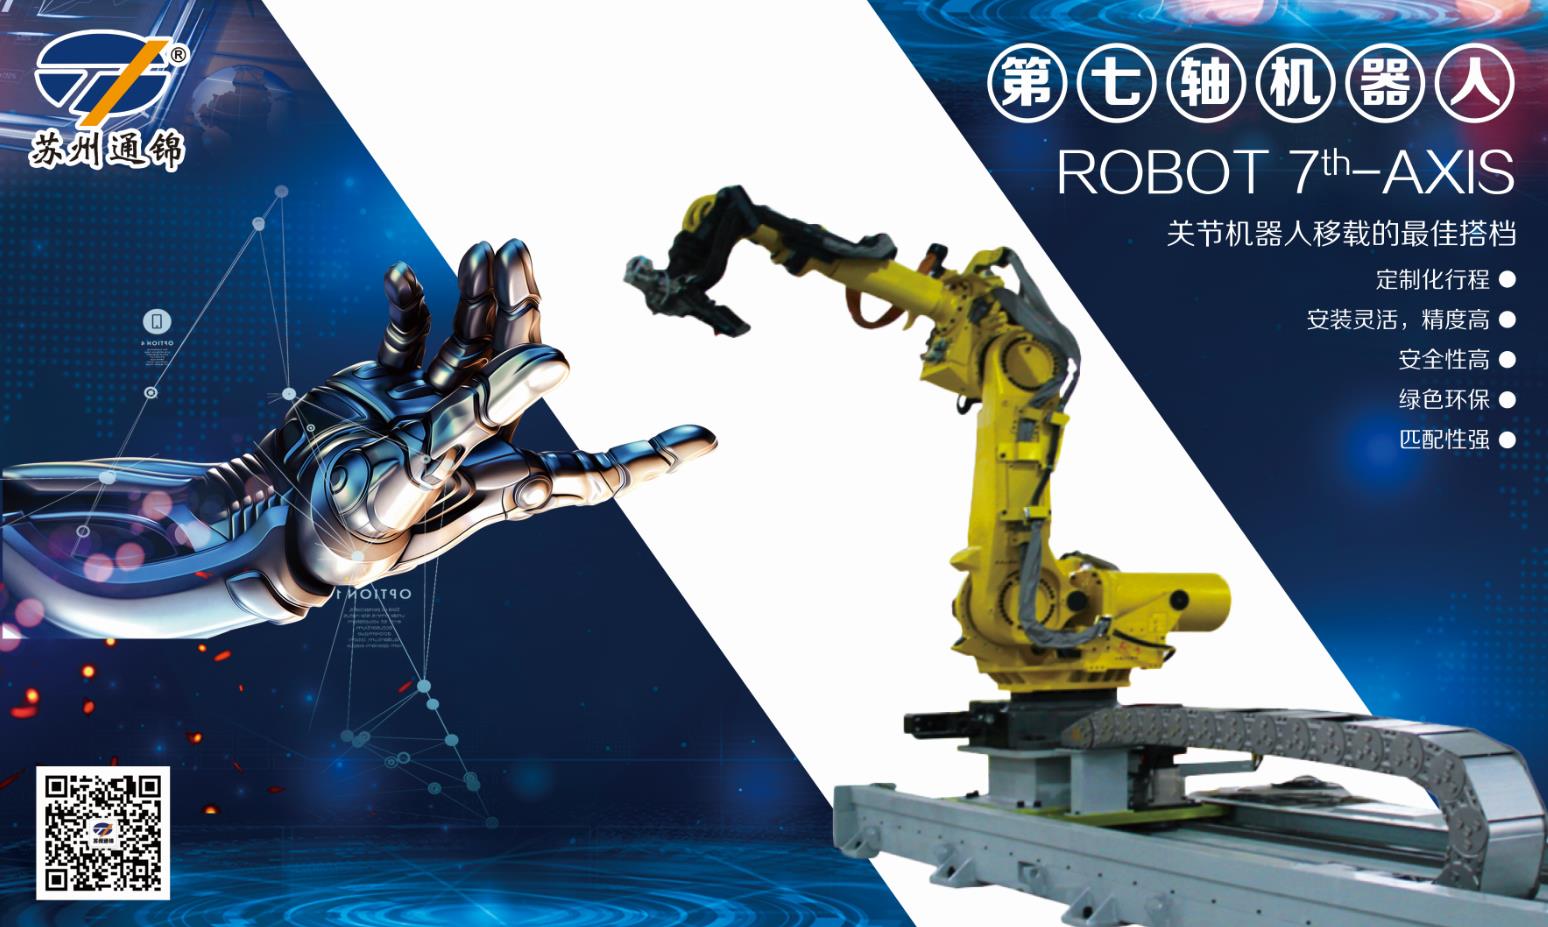 【展會專欄】2019中國工博會機器人展，我們蓄勢待發！